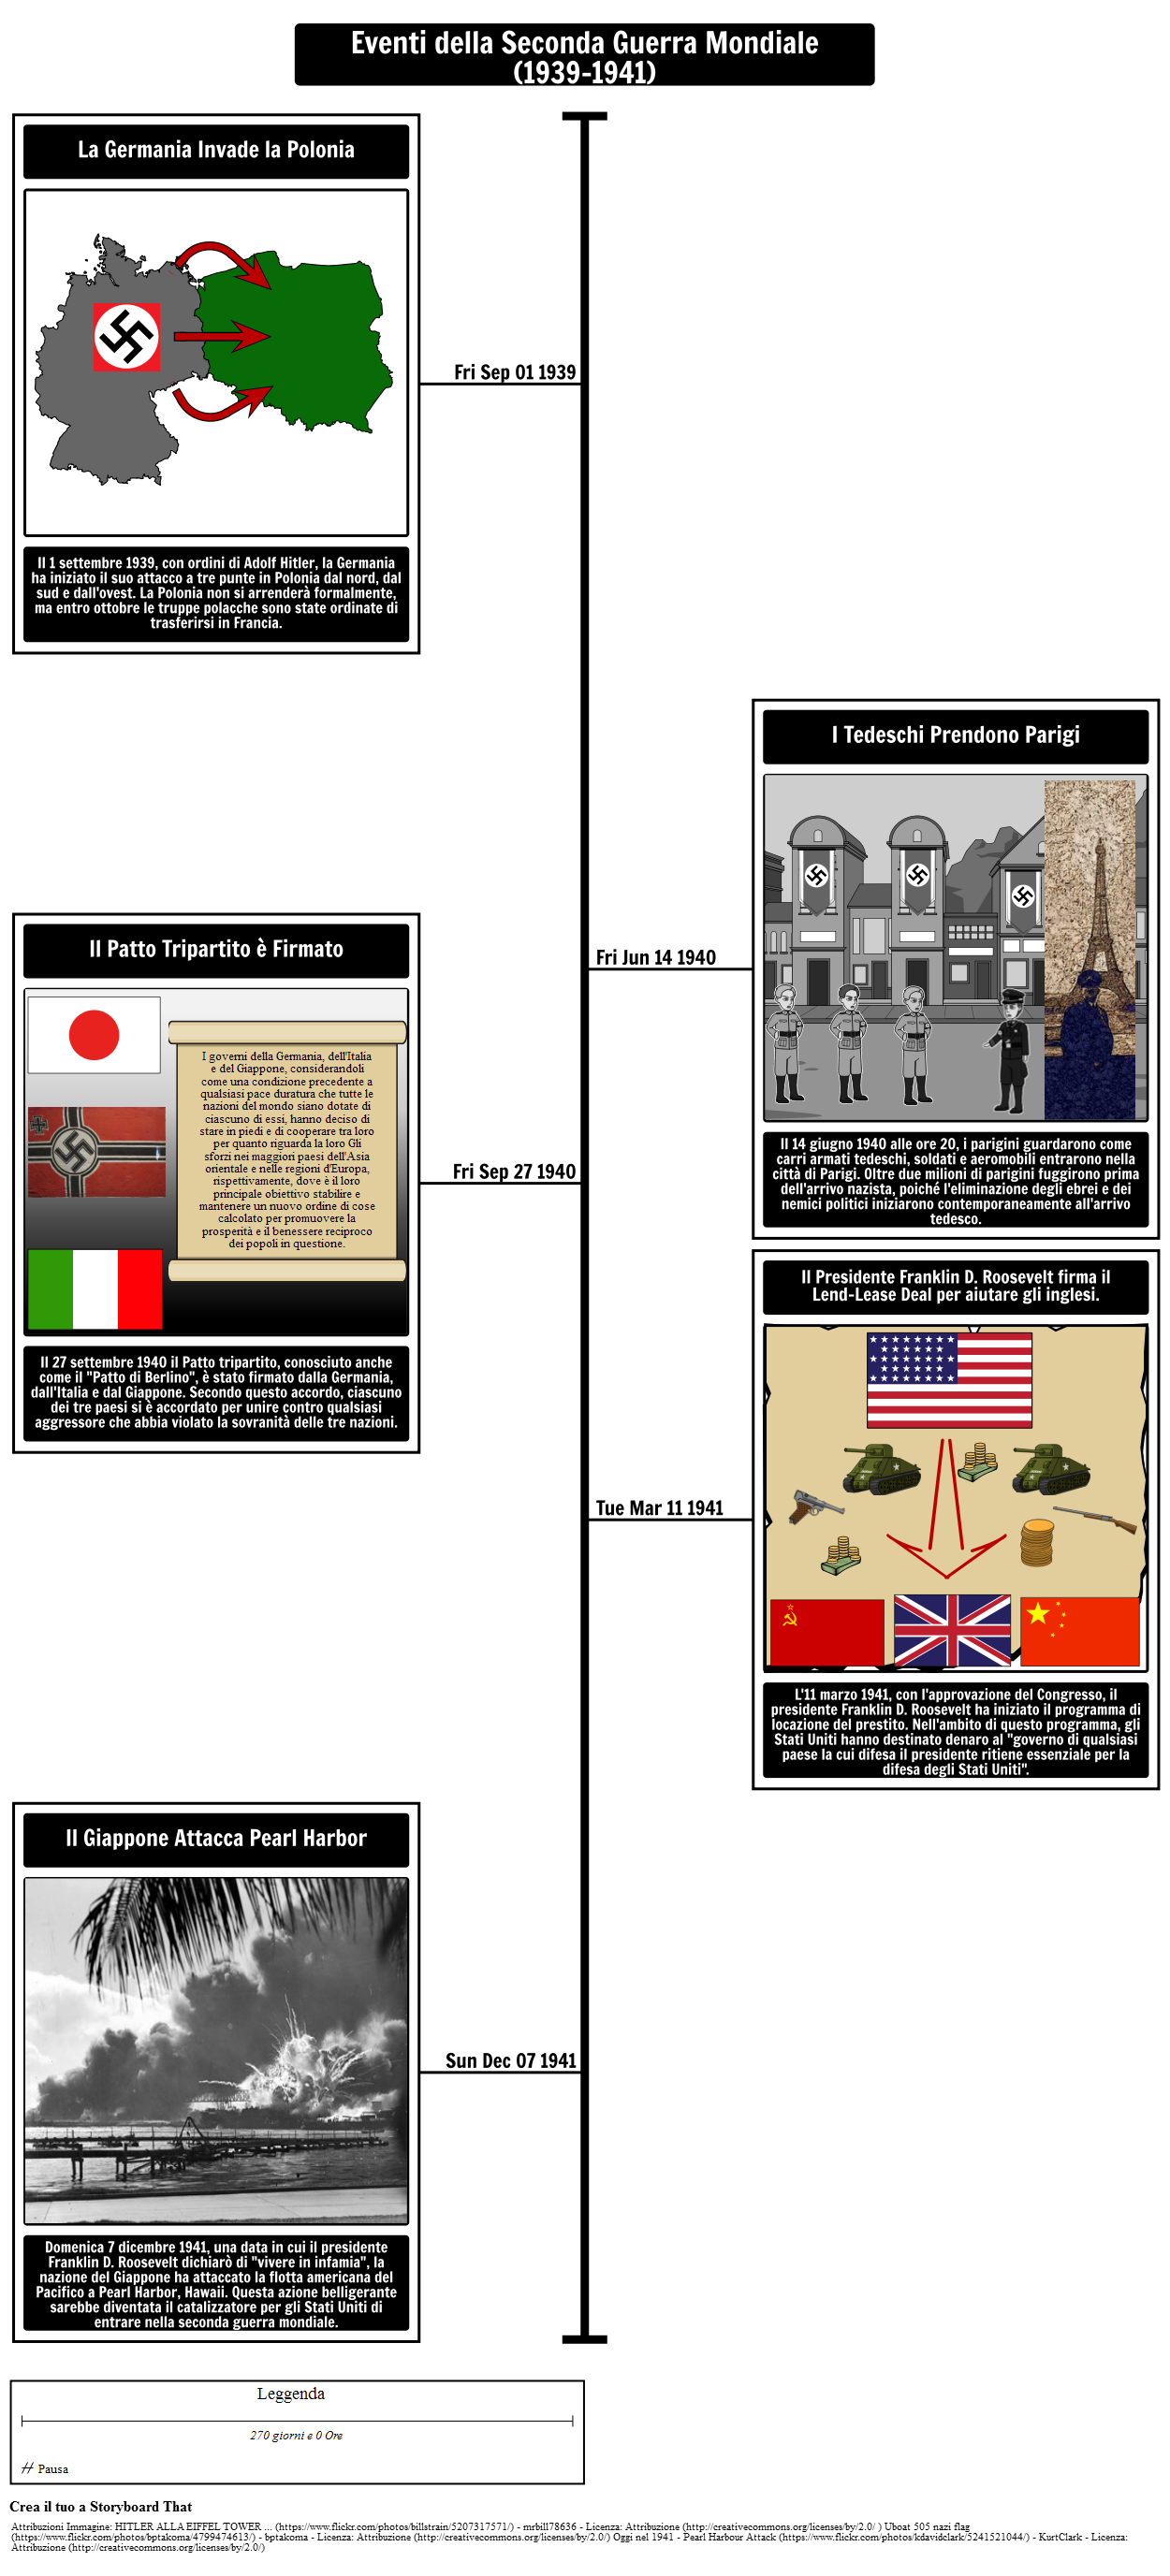 Timeline della seconda guerra mondiale 1939-1941